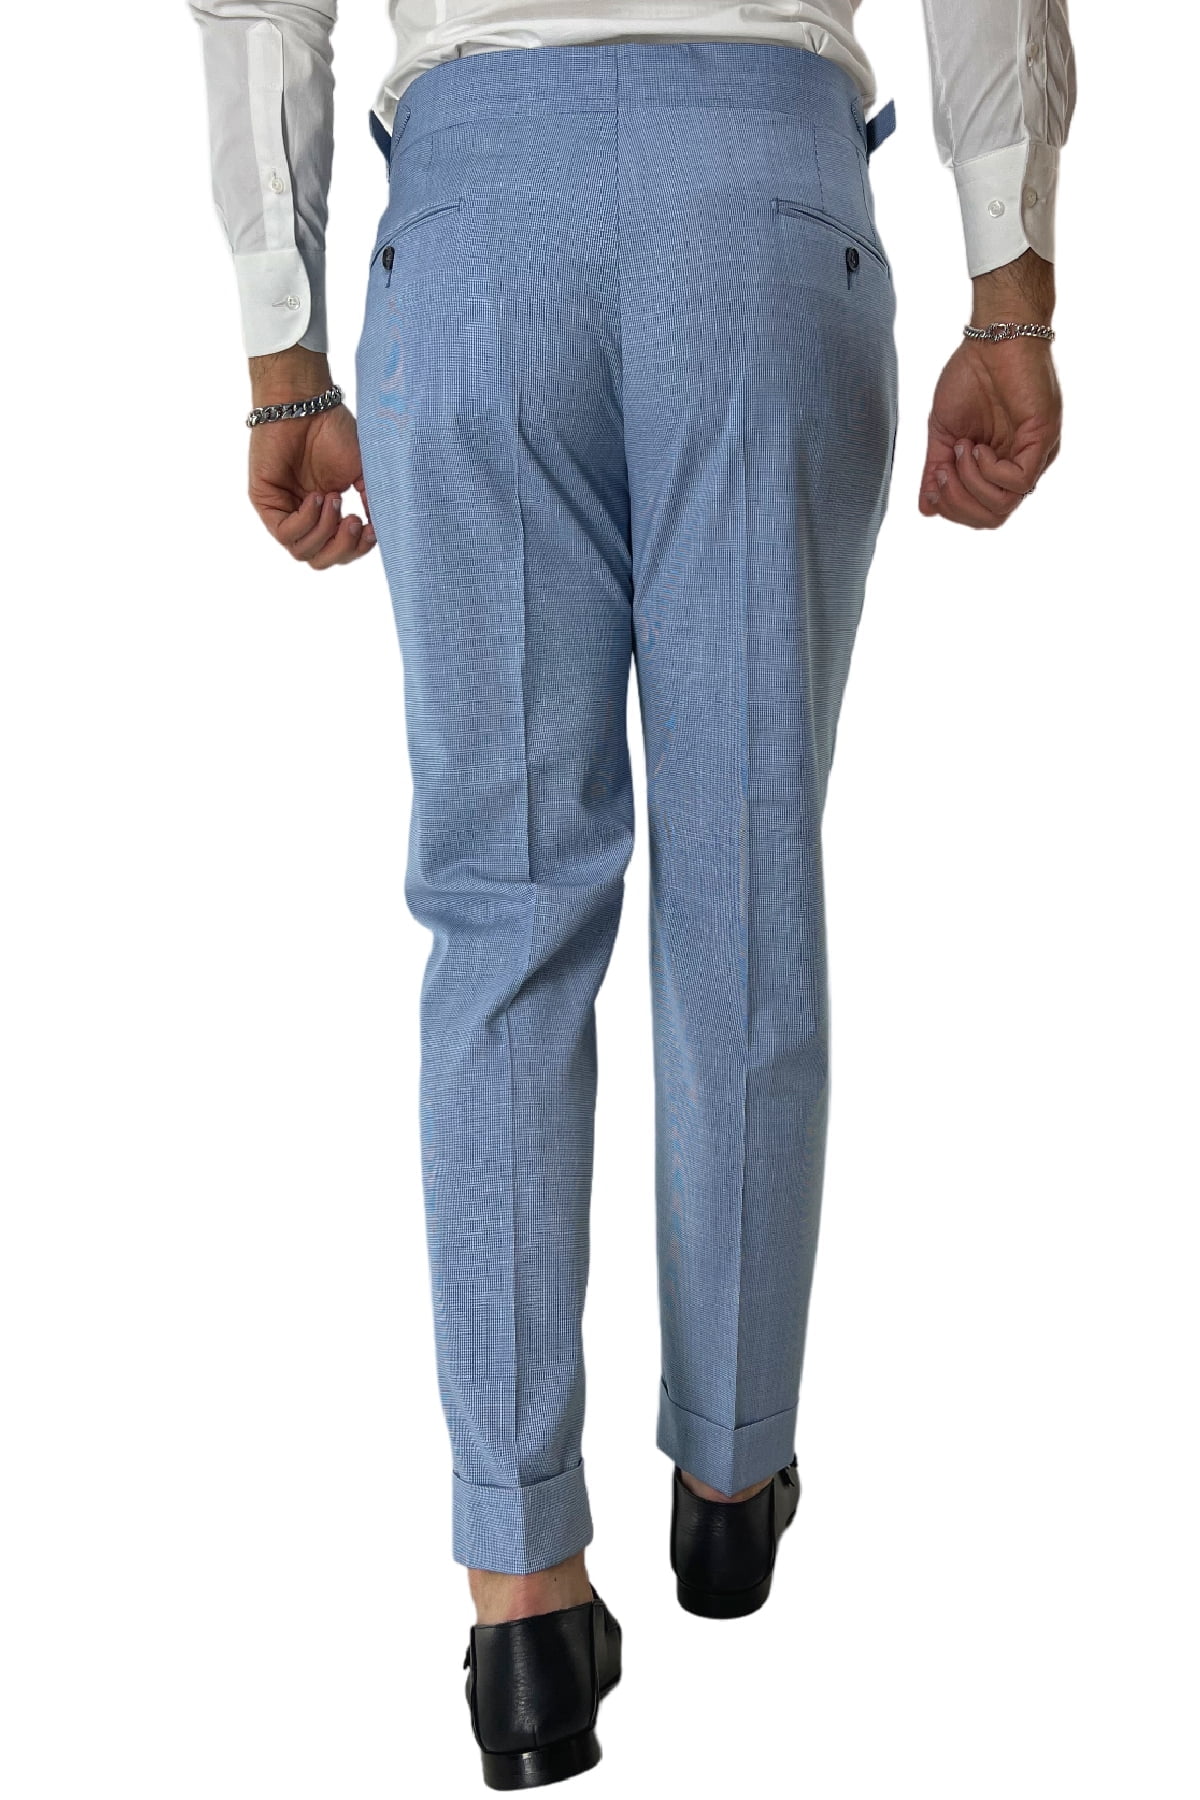 Pantalone uomo Celeste pied de poule in fresco lana vita alta con pinces fibbie laterali e risvolto 4cm